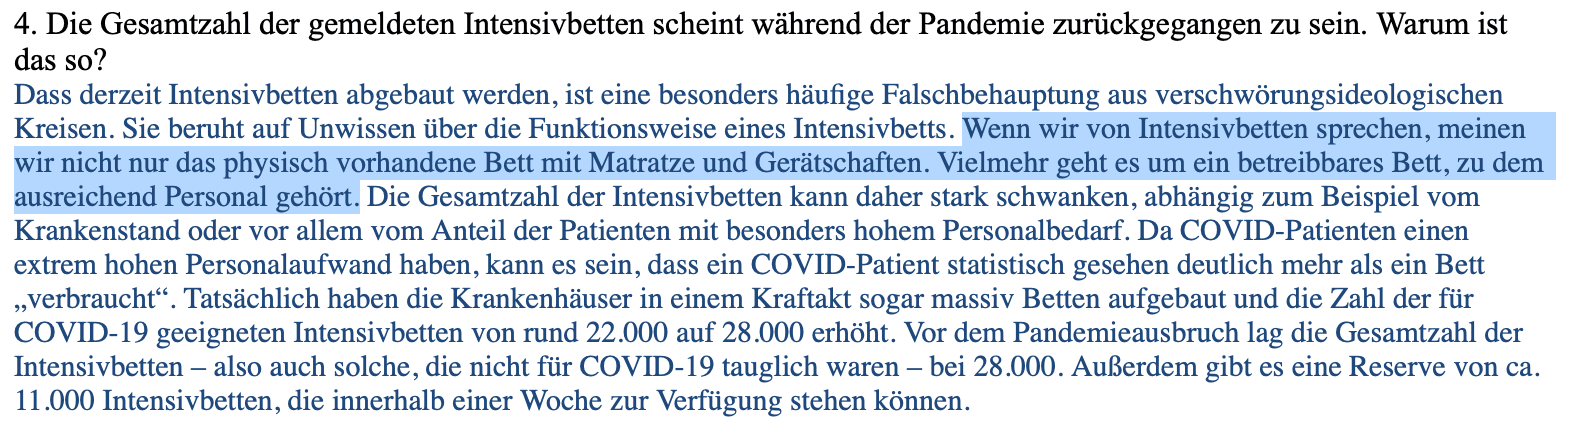 Auszug aus der E-Mail eines Sprechers der Deutschen Krankenhausgesellschaft.